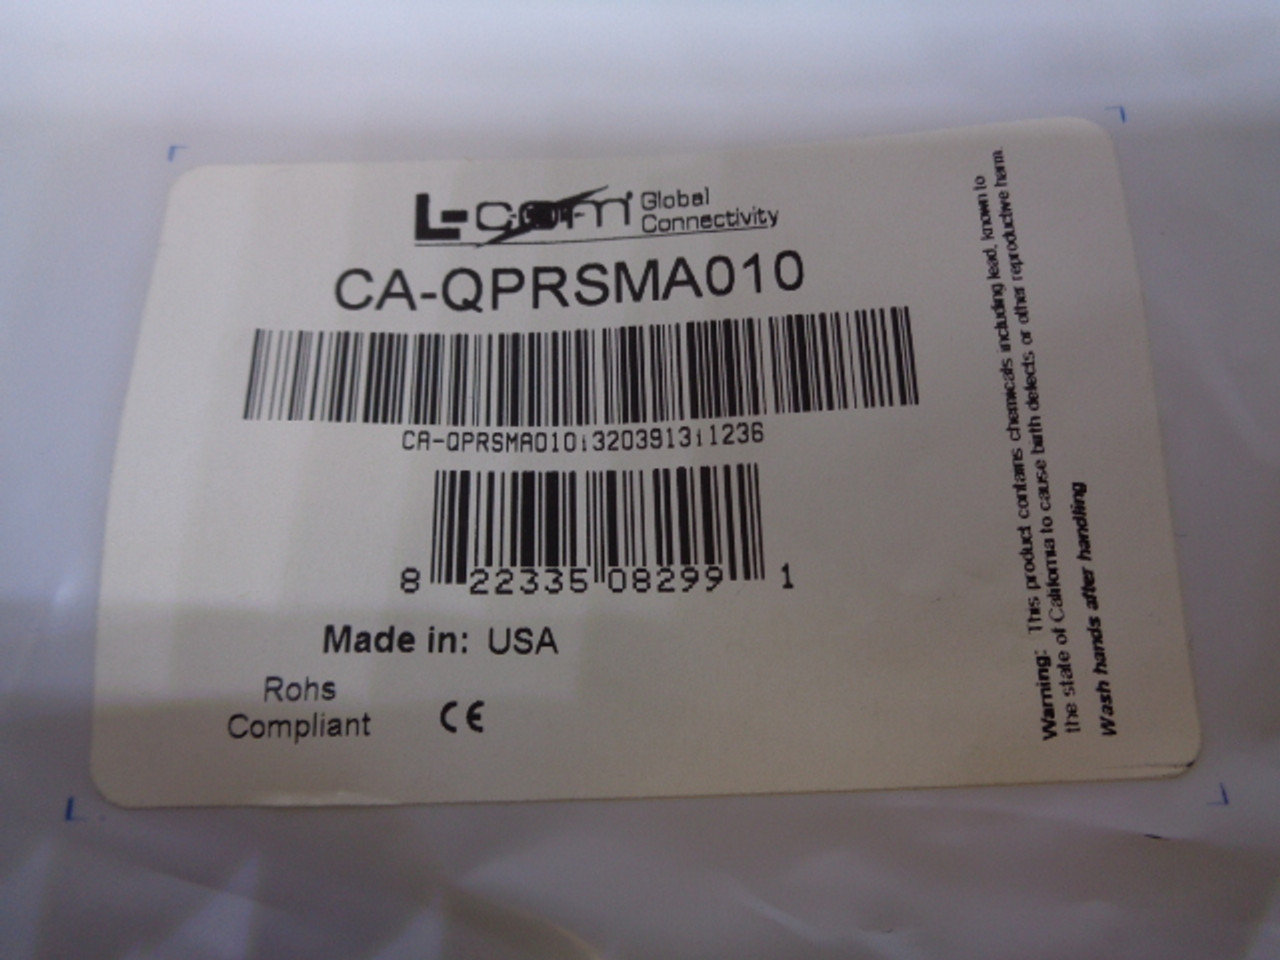 L-com Global Connectivity CA-QPRSMA010 Cable Kit, 10ft.